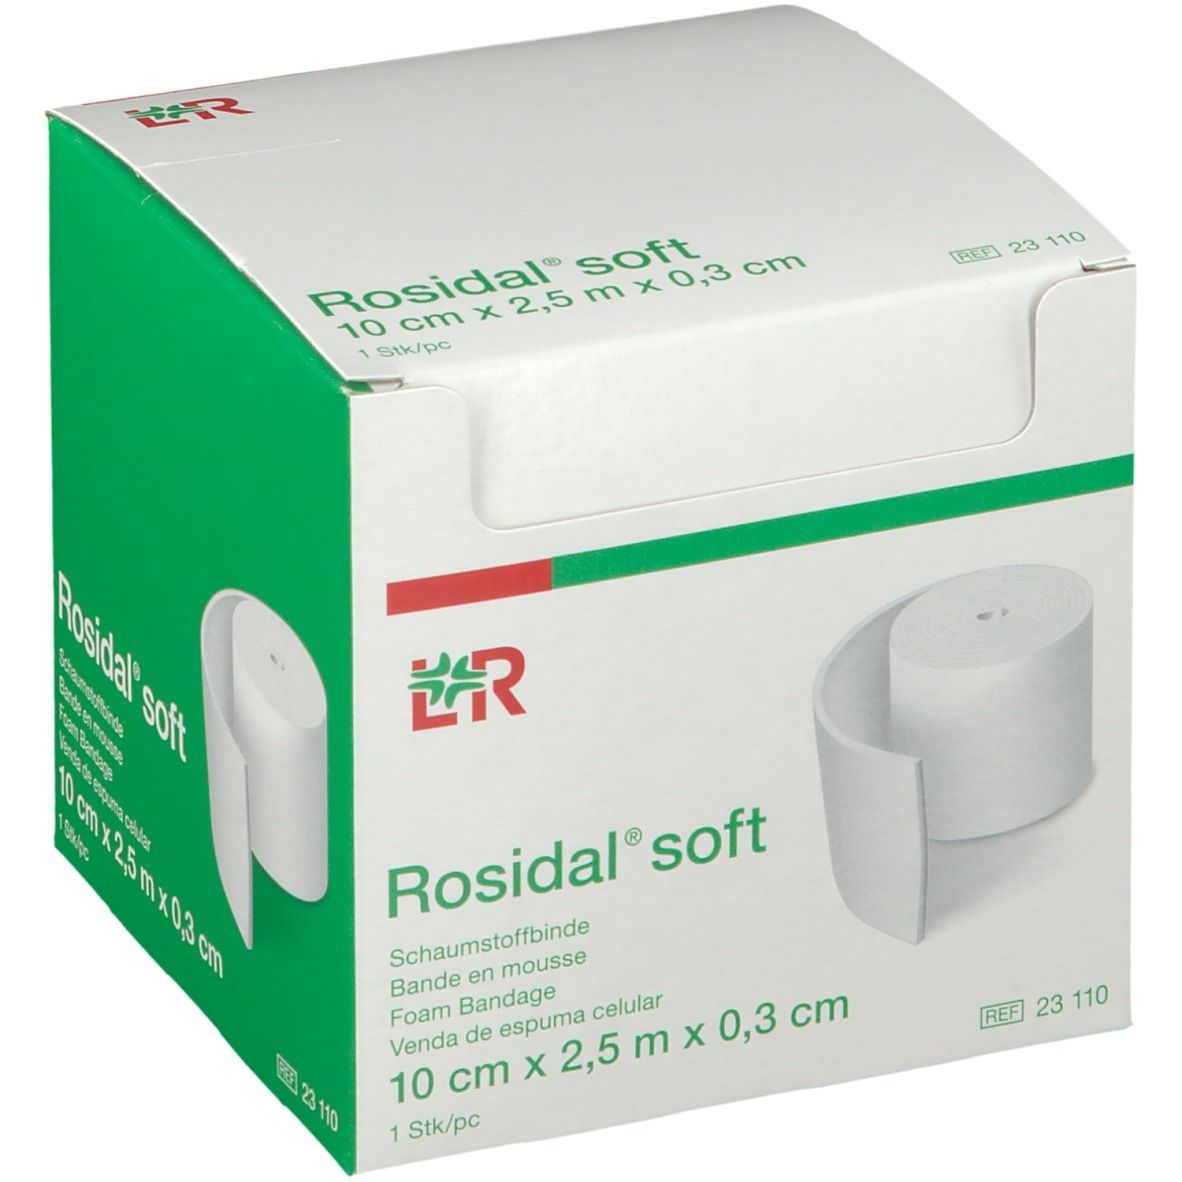 Rosidal Soft 10cm x 0.3cm x 2.5m 23110